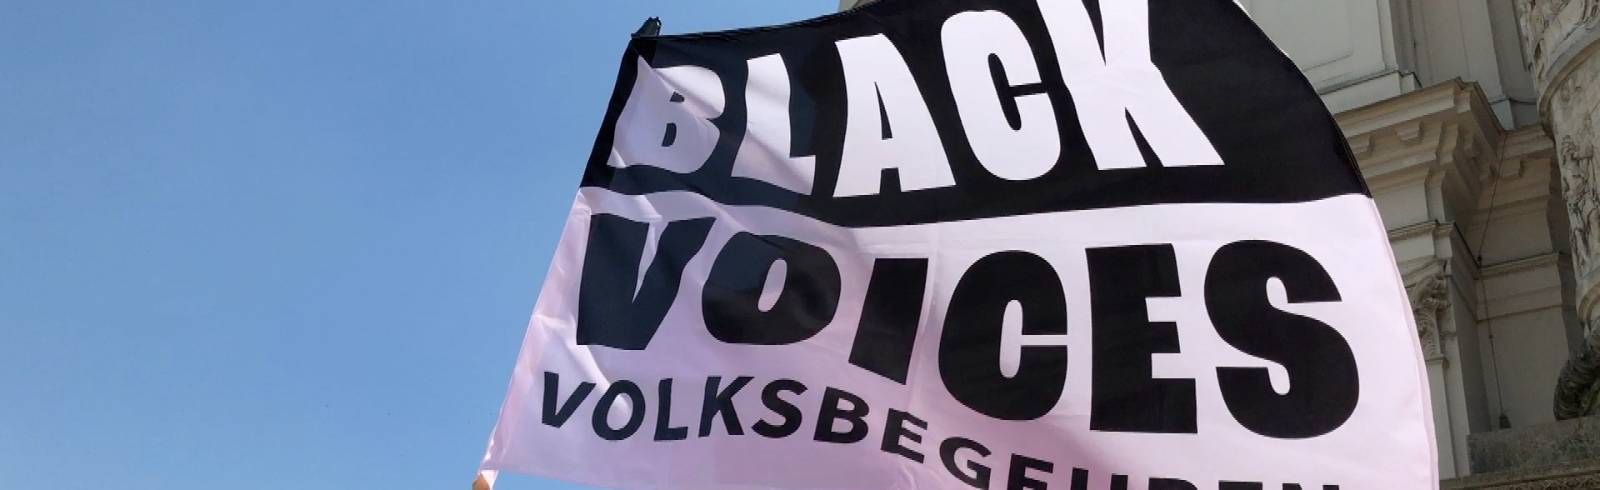 Black Voices Volksbegehren: Da geht noch was